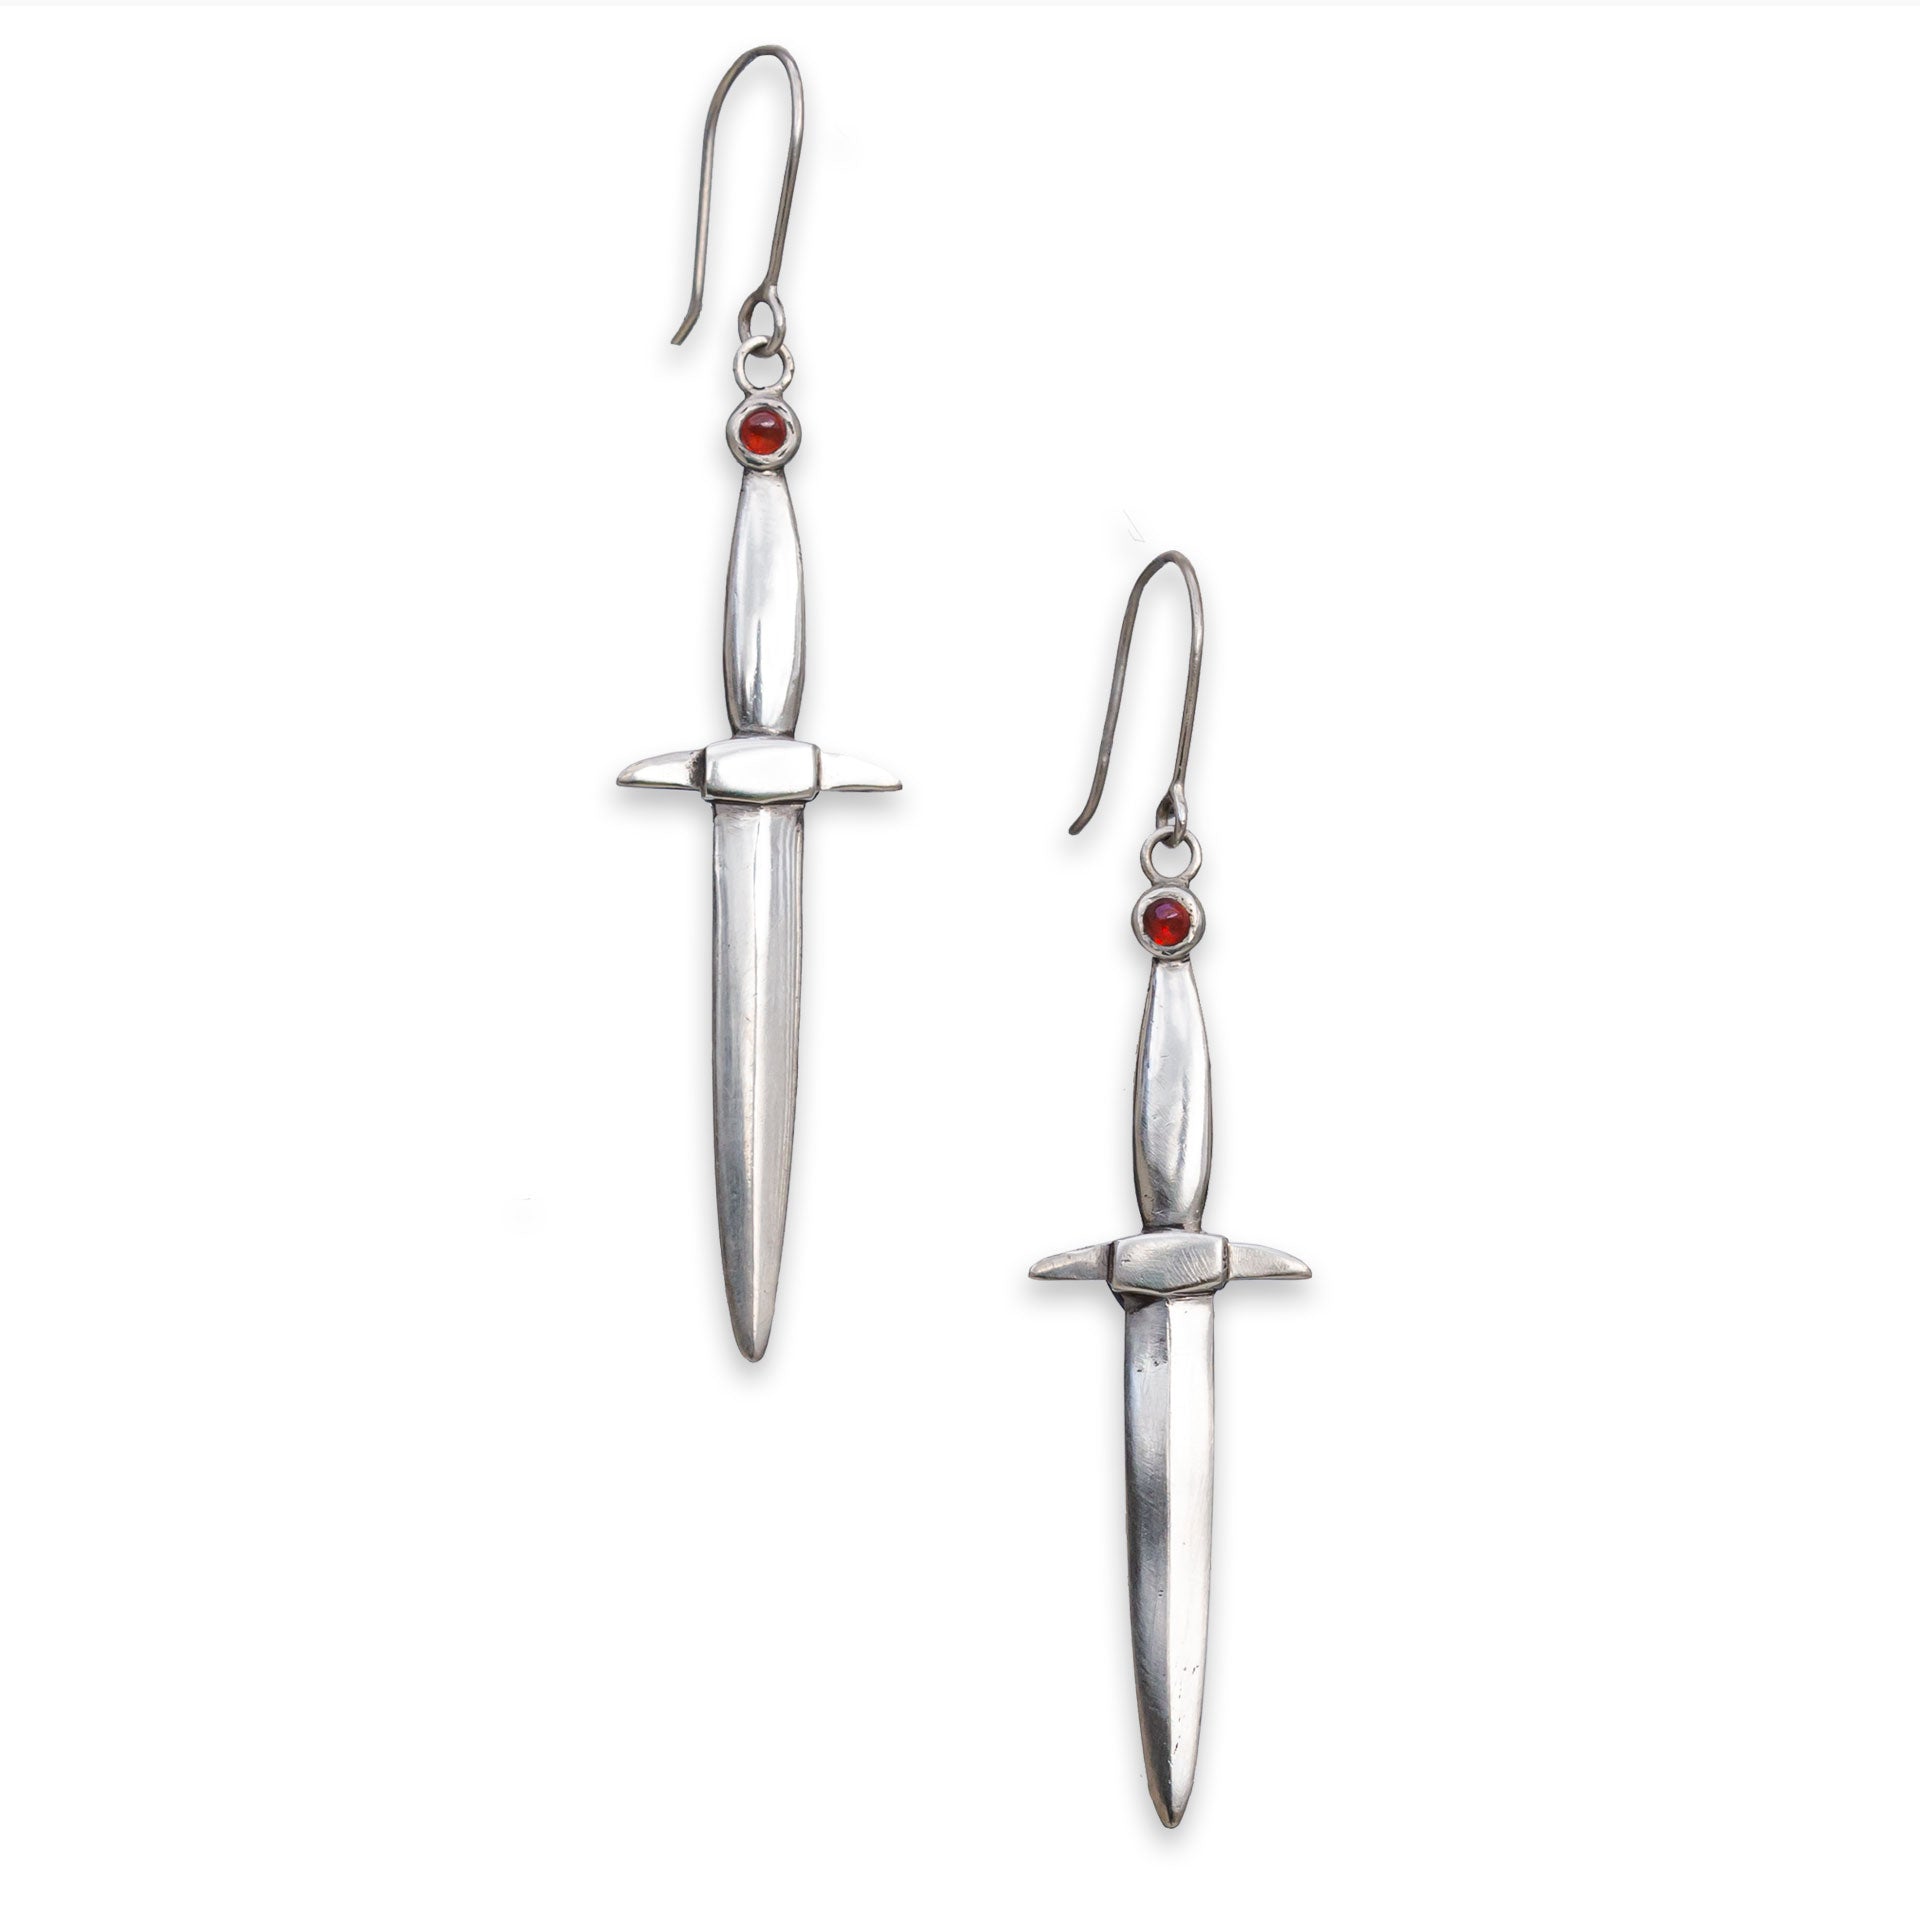 Razor blade gauged earrings-Judas Priest earrings – TammyGMSCN